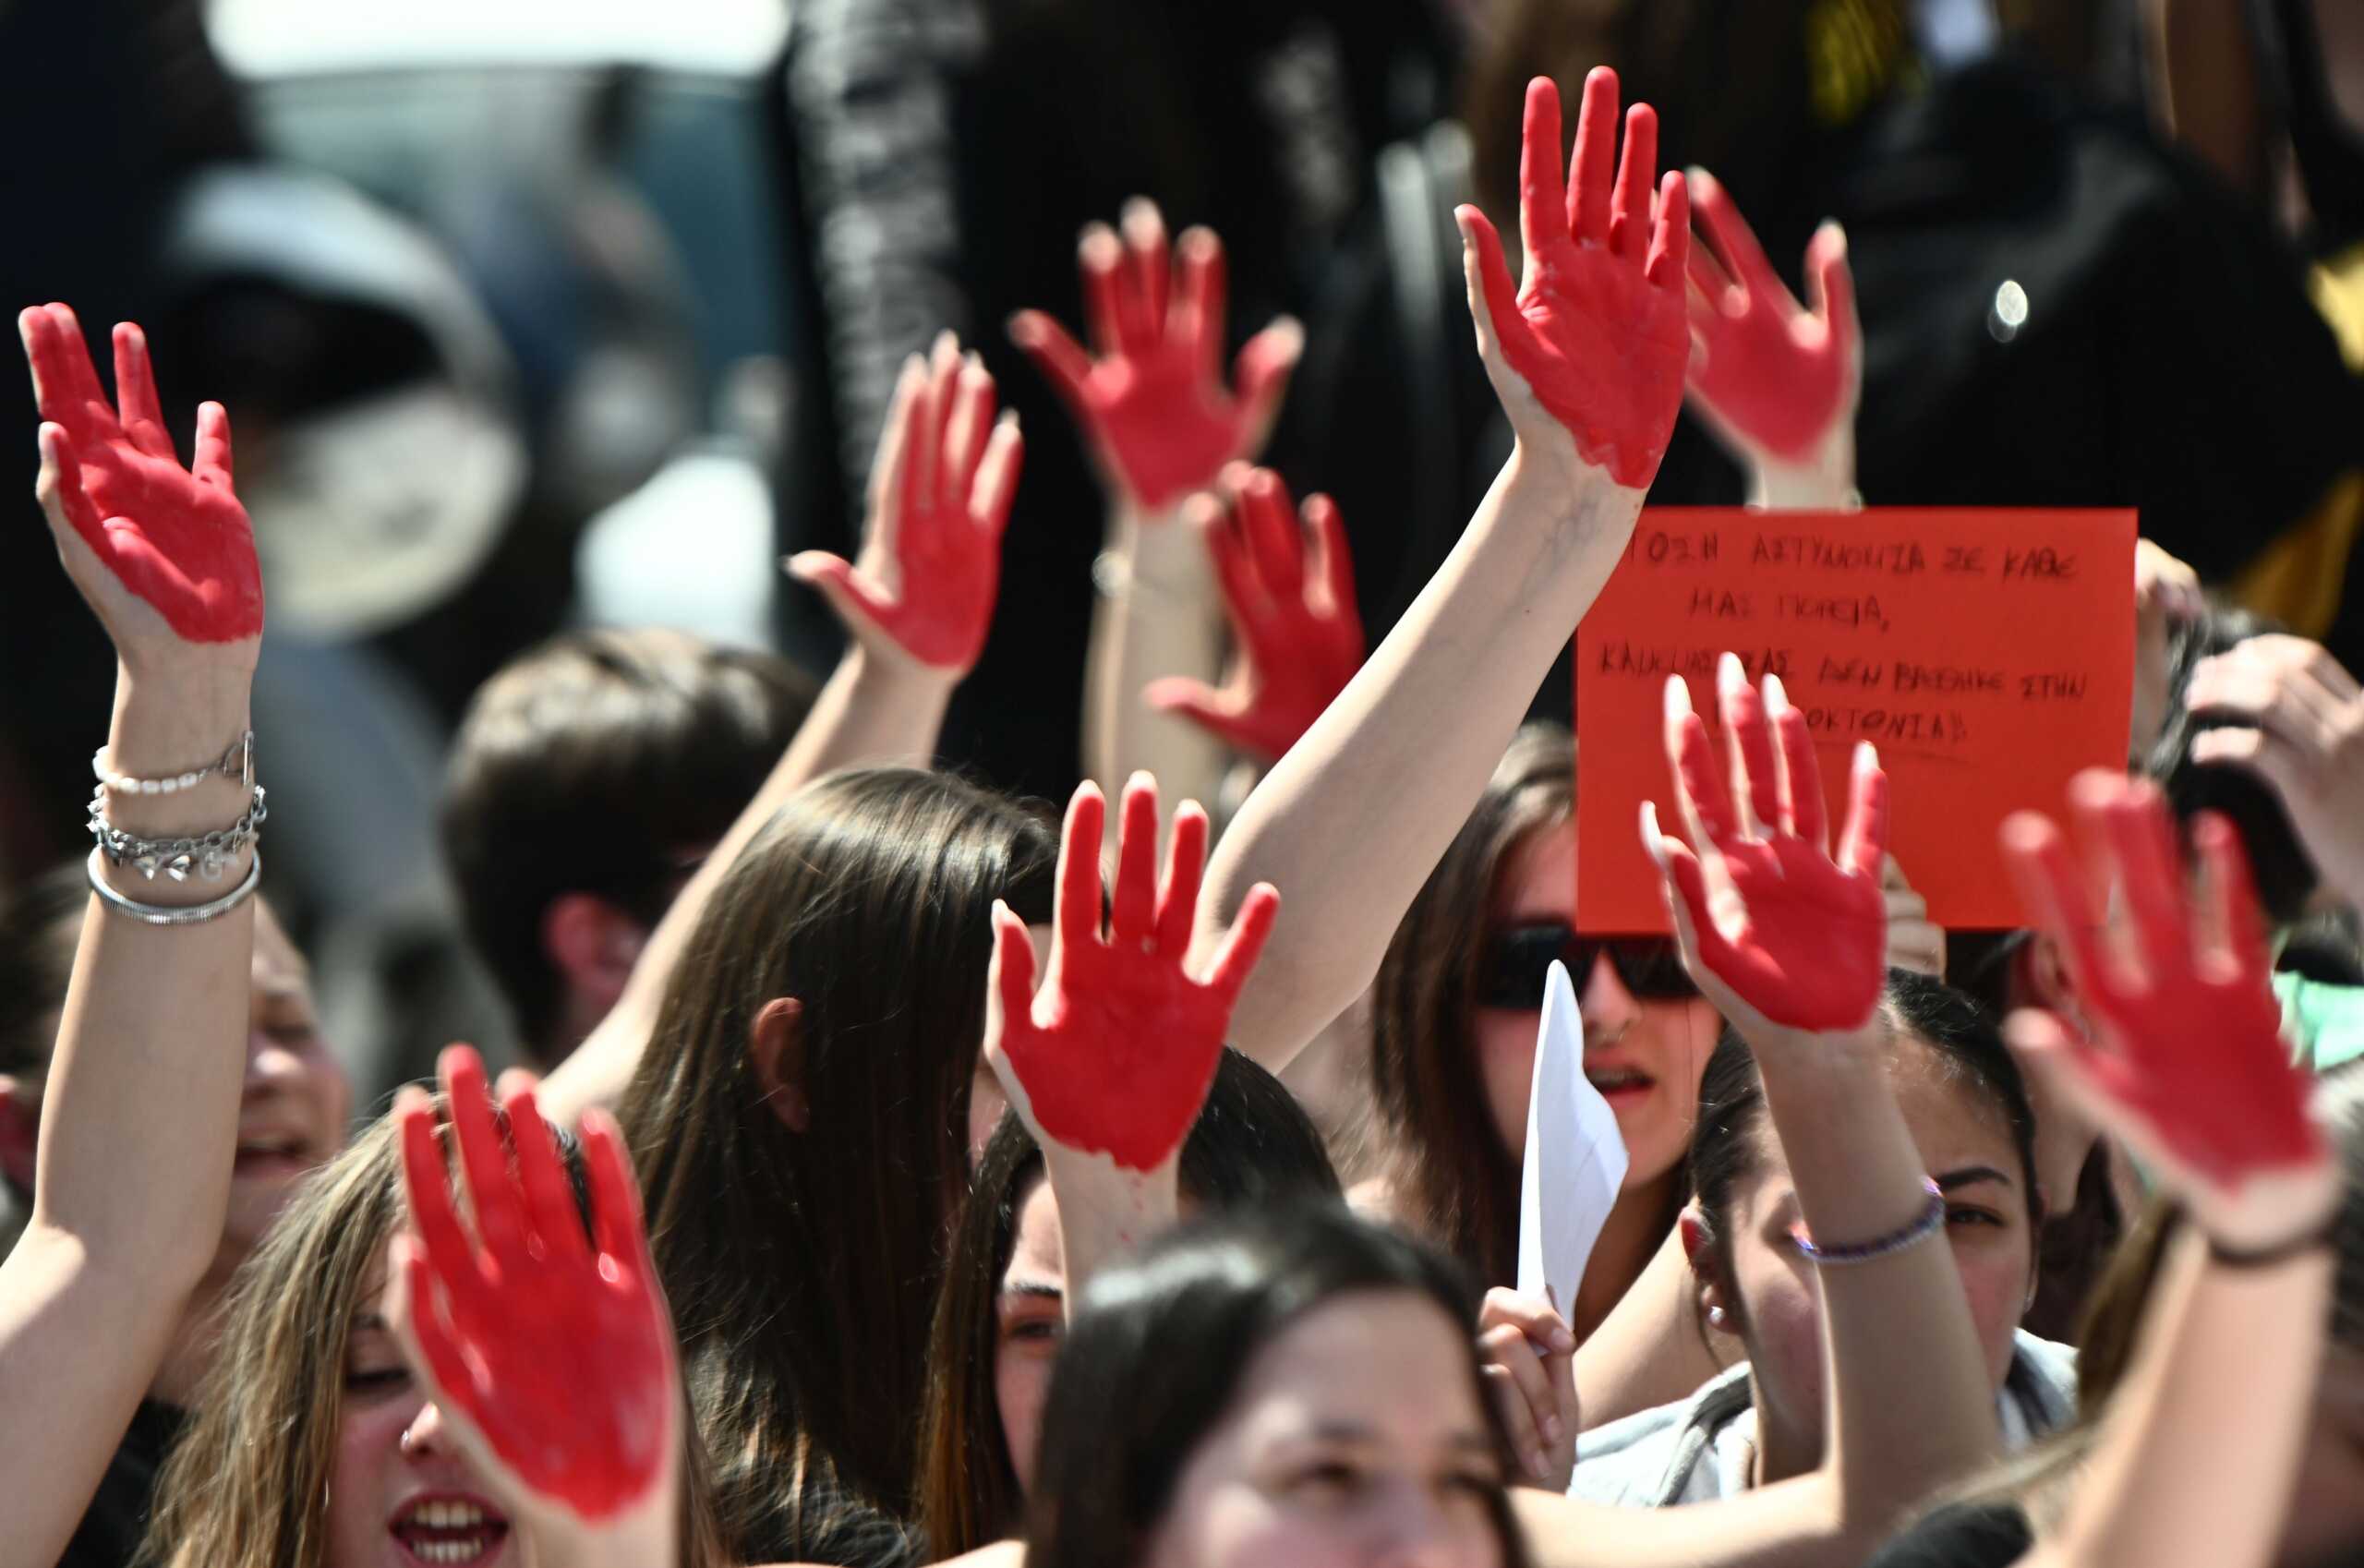 Οι γυναικοκτονίες στην Ελλάδα θέμα στον Guardian: Τα κυκλαδικά ειδώλια δείχνουν σεβασμό στο γυναικείο σώμα, πώς το έχασε η Ελλάδα;